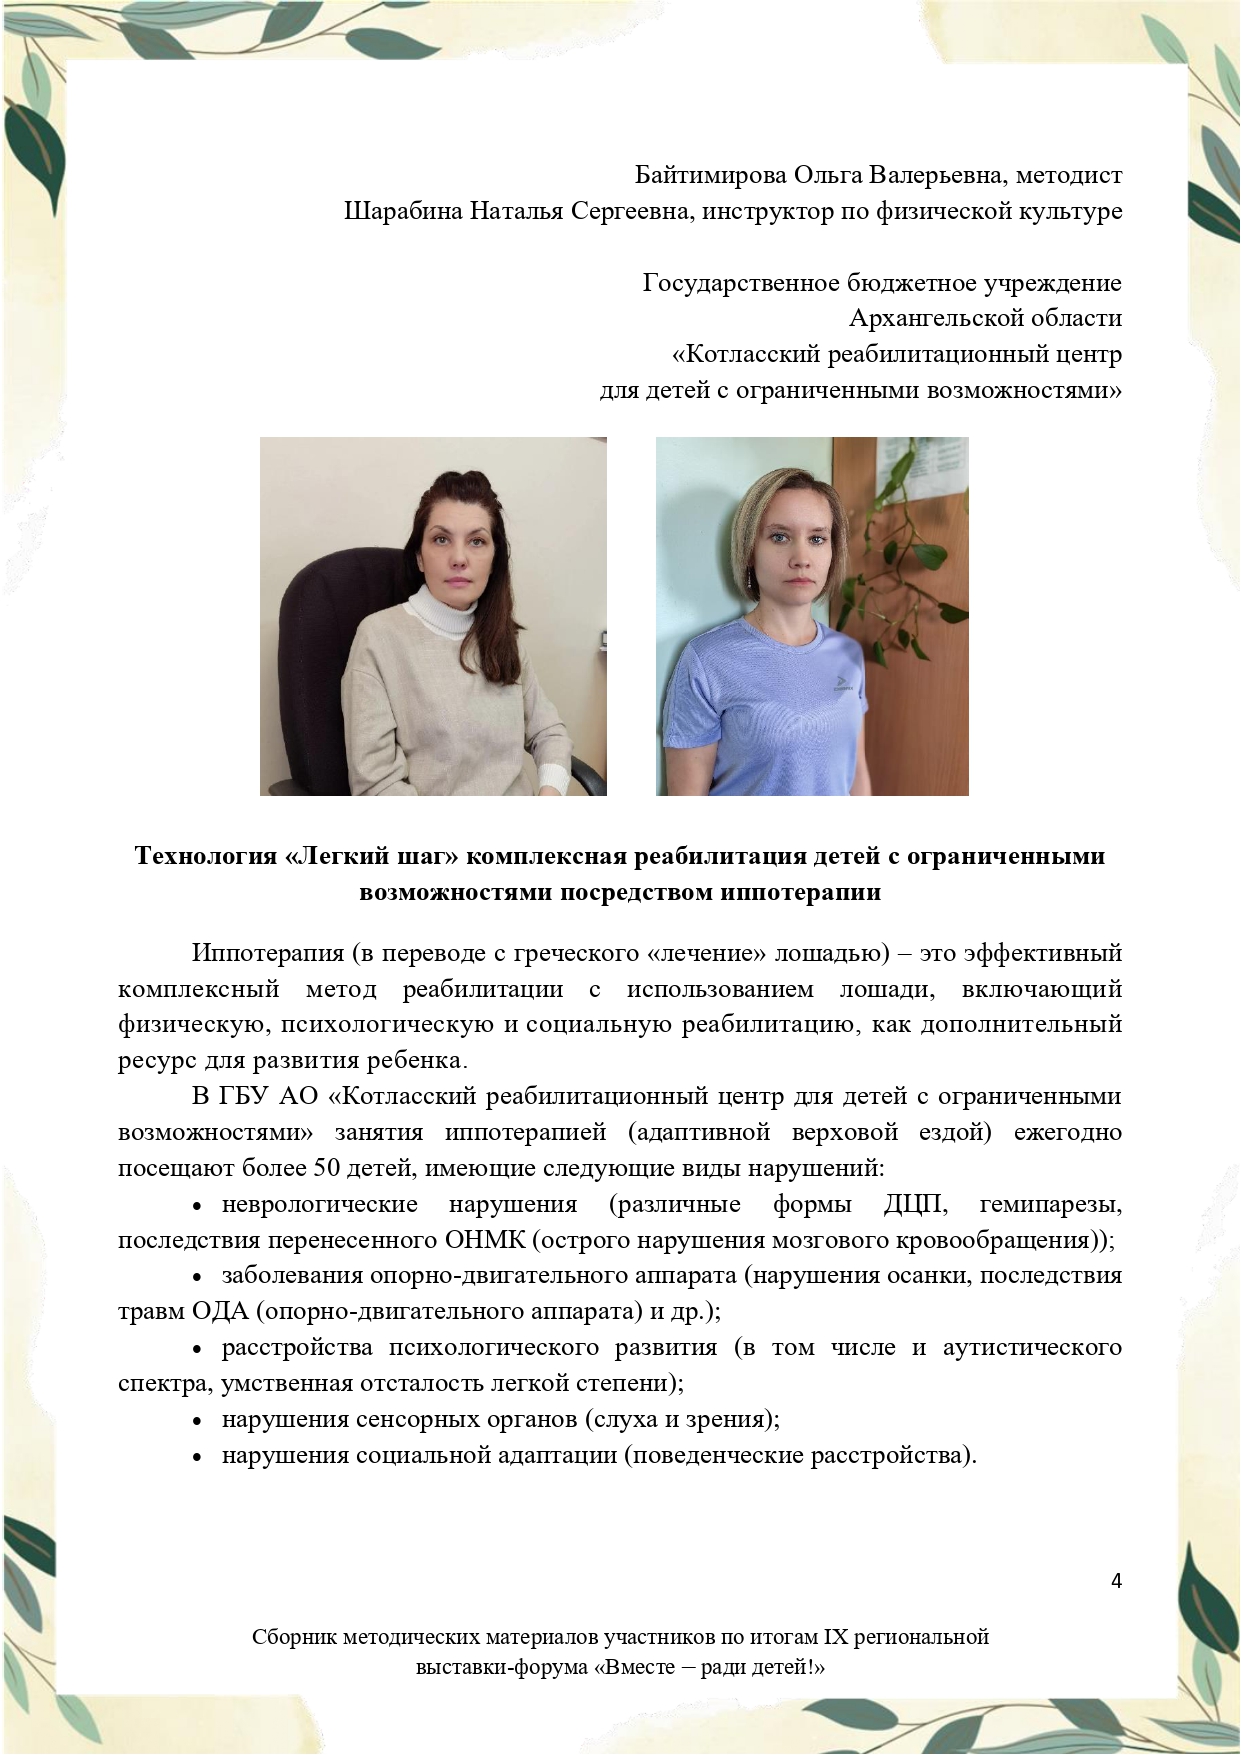 Sbornik_metodicheskikh_materialov_uchastnikov_IX_regionalnoy_vystavki-foruma_Vmeste__radi_detey_33__2023_page-0004